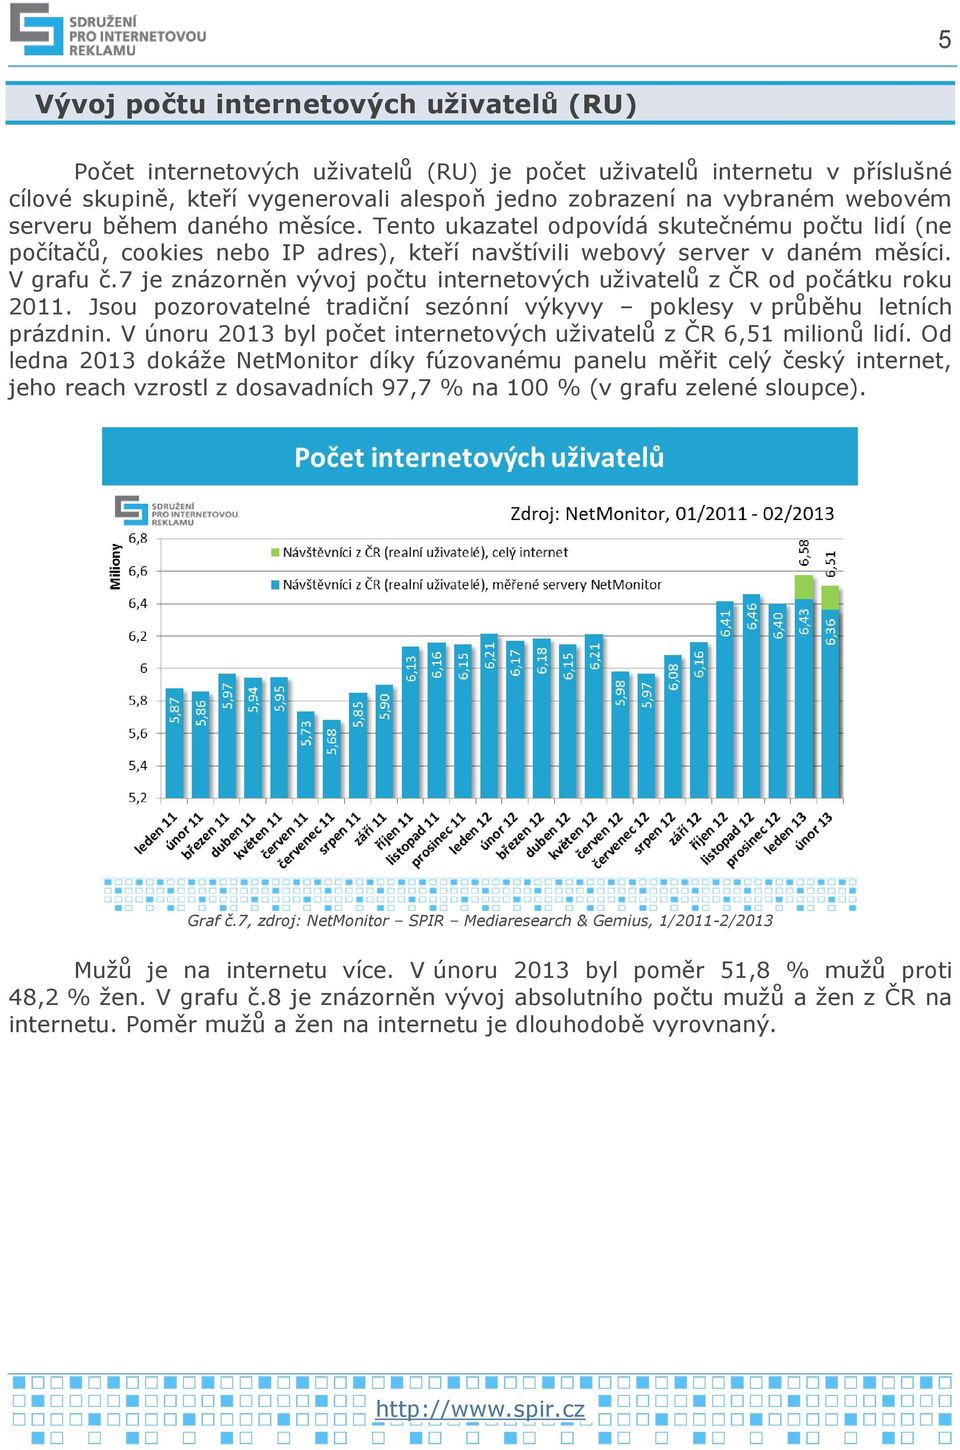 7 je znázorněn vývoj počtu internetových uživatelů z ČR od počátku roku 2011. Jsou pozorovatelné tradiční sezónní výkyvy poklesy v průběhu letních prázdnin.